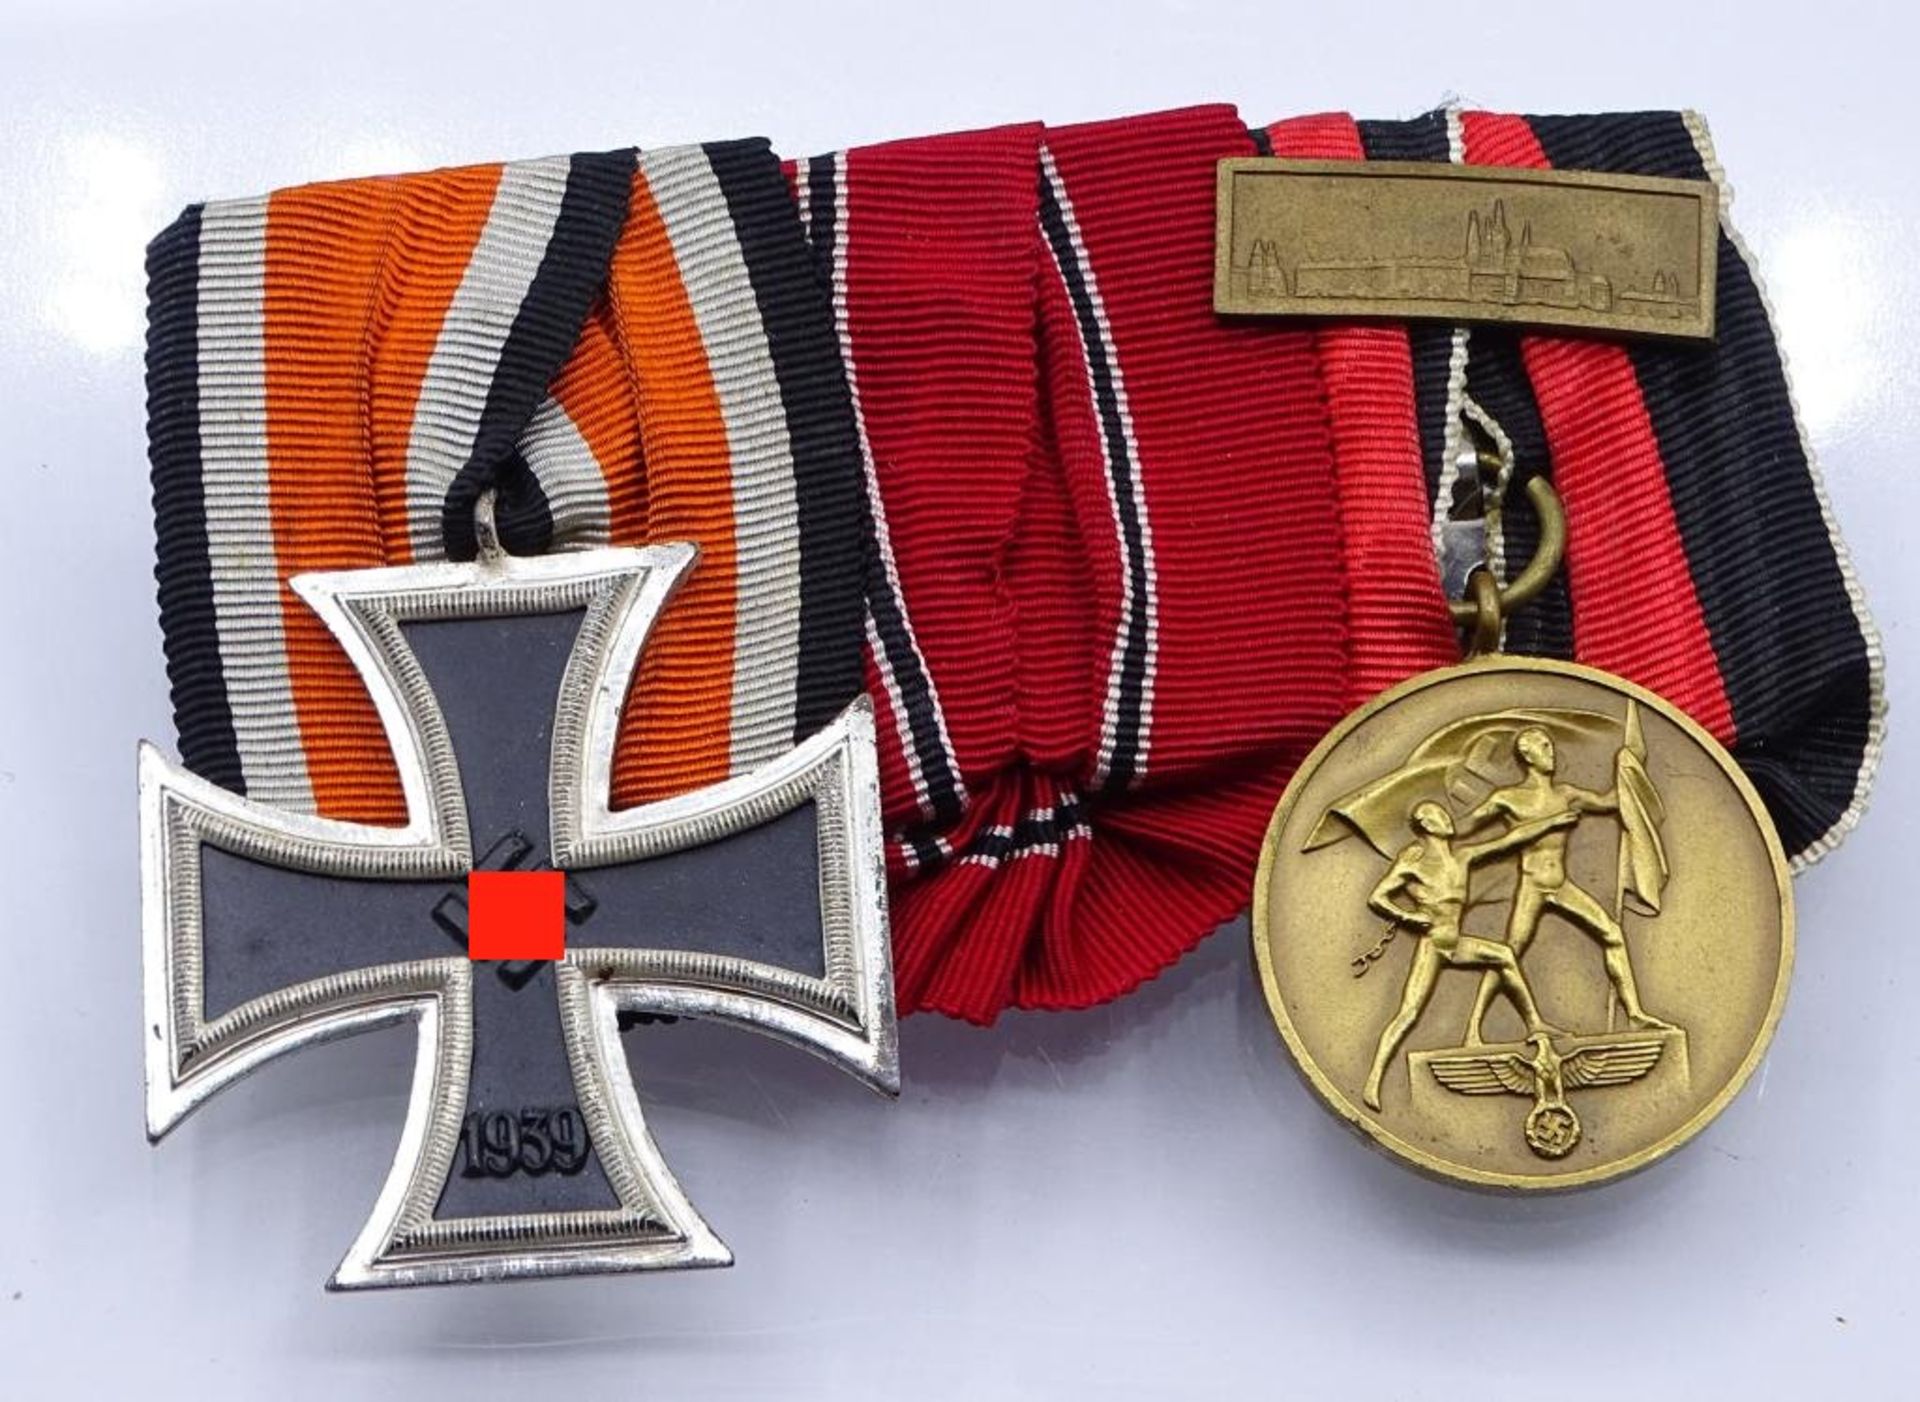 Ordensspange mit EK 2.WK,2.Klasse, Medaille 1.Oktober 1938- - -22.61 % buyer's premium on the hammer